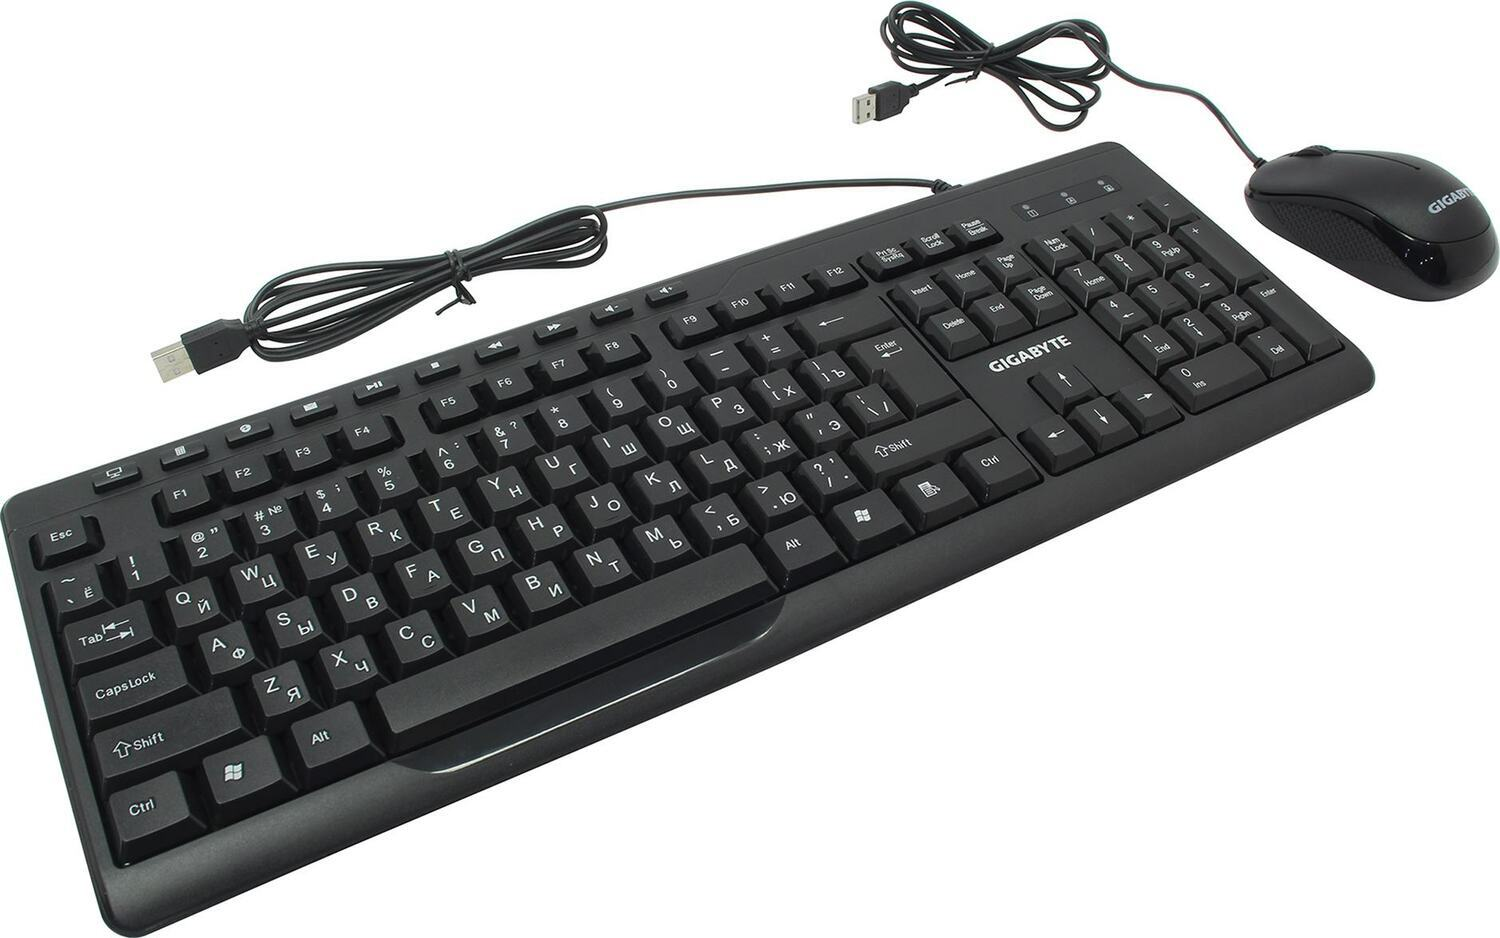 Комплект клавиатура и мышь Gigabyte GK-KM6300 RU  комплект клавиатура + мышь, проводные (USB, 1.5м), 1000dpi, {20} (551179) комплект клавиатура + мышь, проводные (USB, 1.5м), 1000dpi, (20) (551179) Gigabyte - фото 1